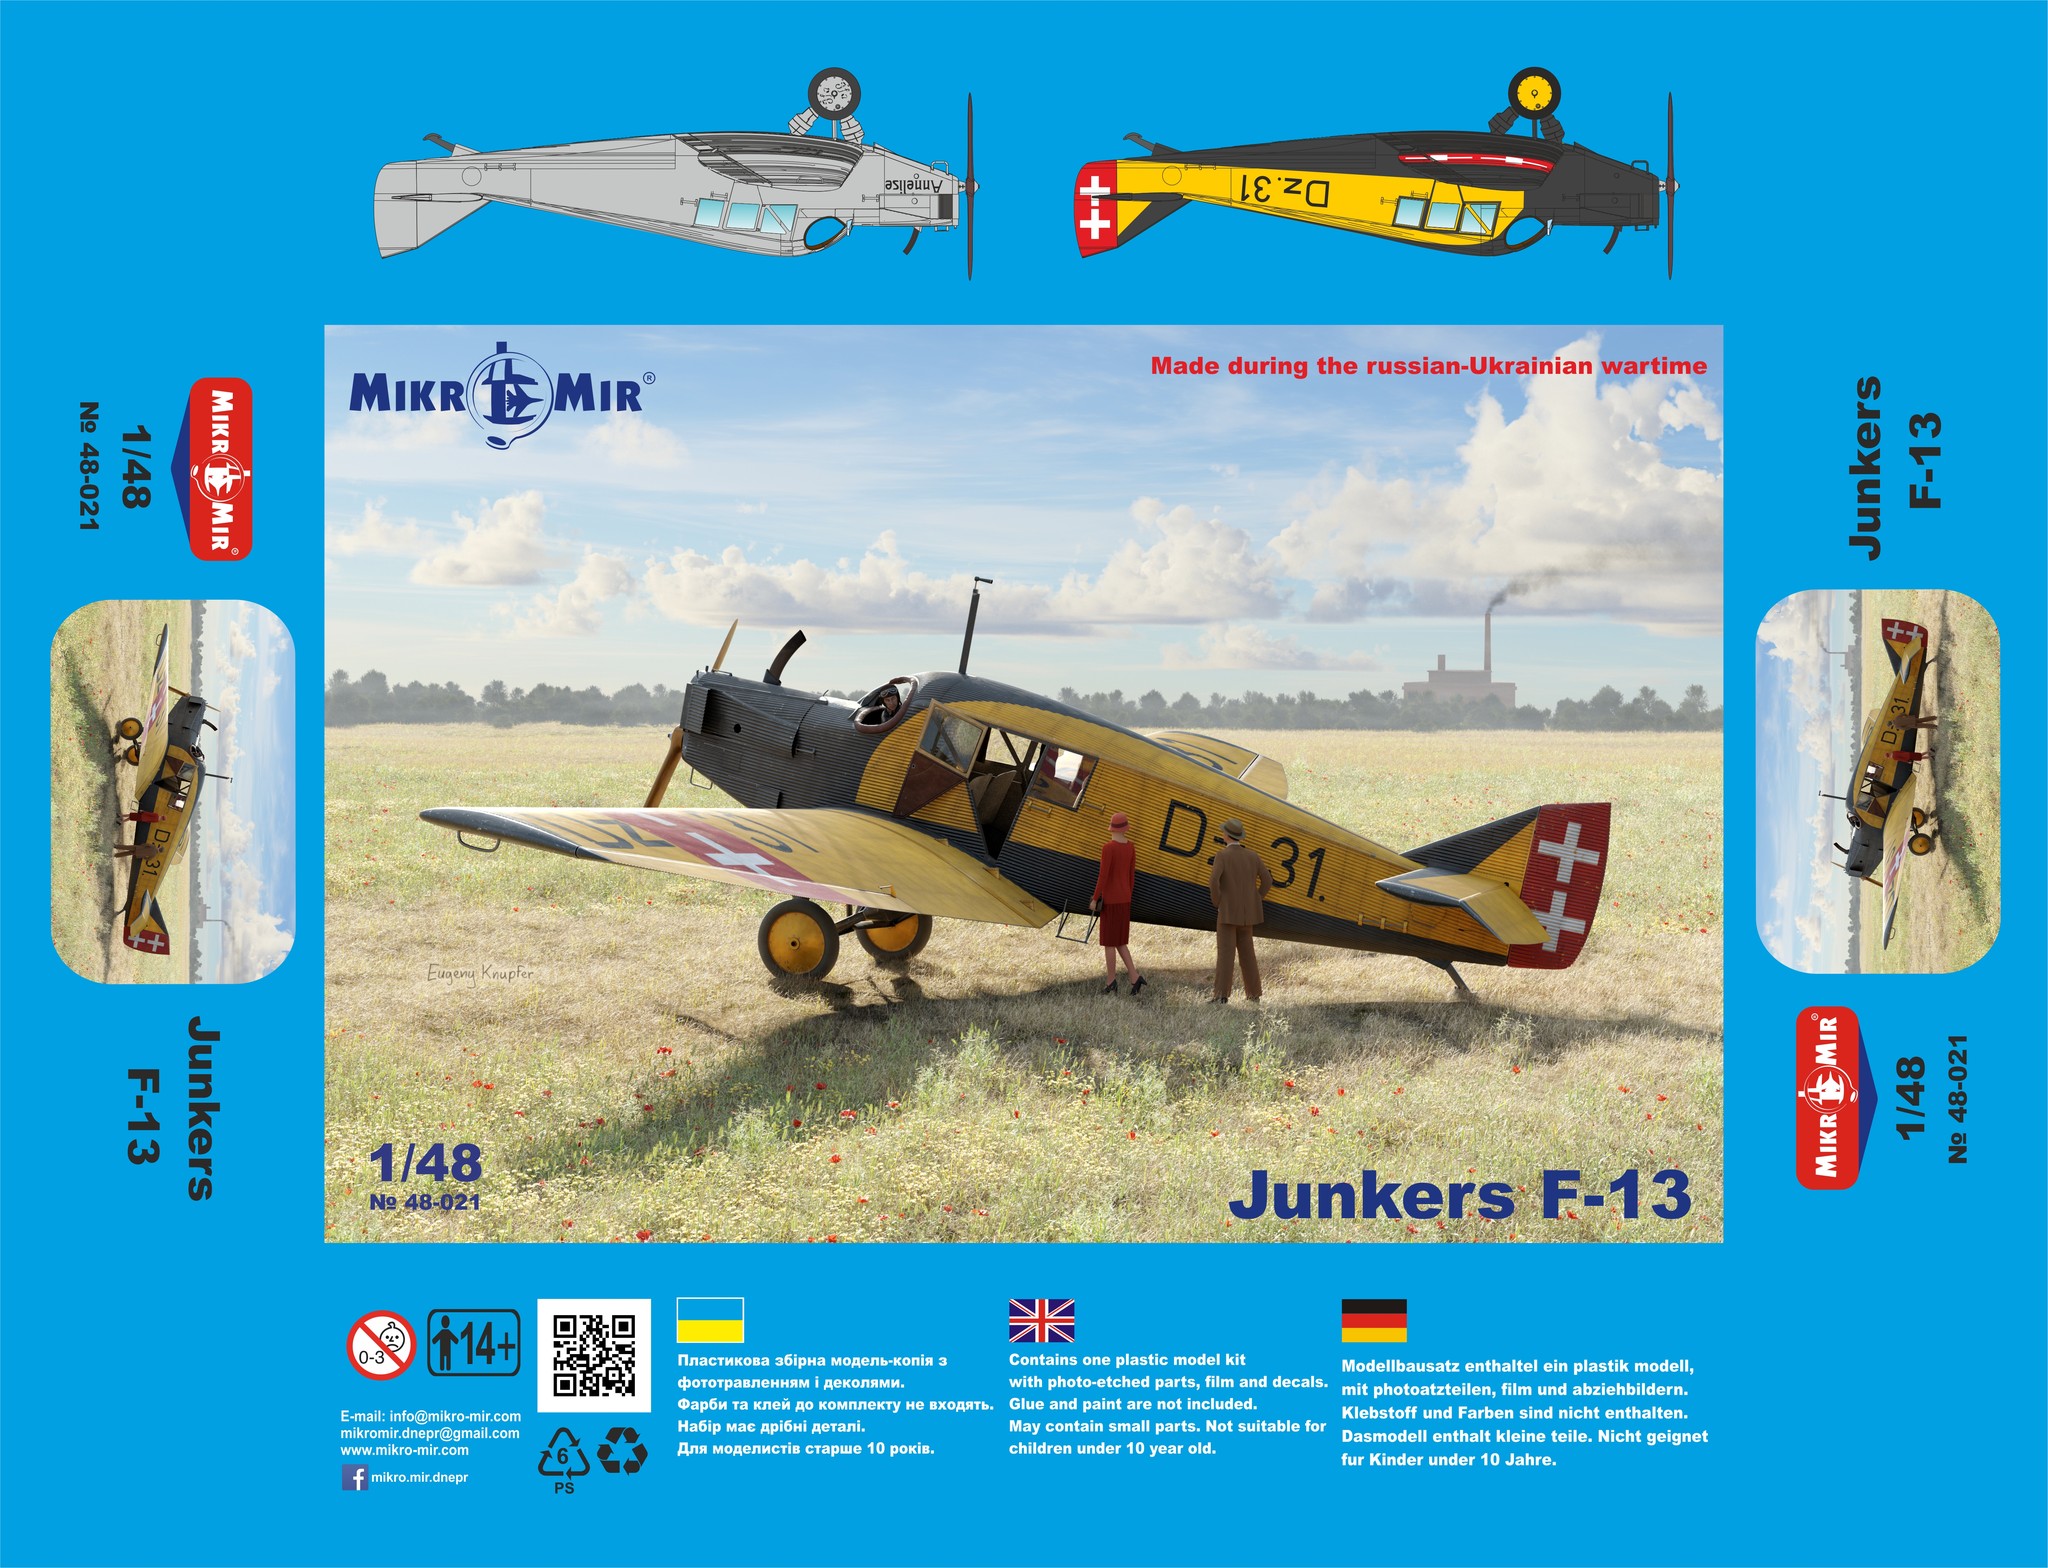 MikroMir 48-021 - Junkers F-13 1/48 scale model